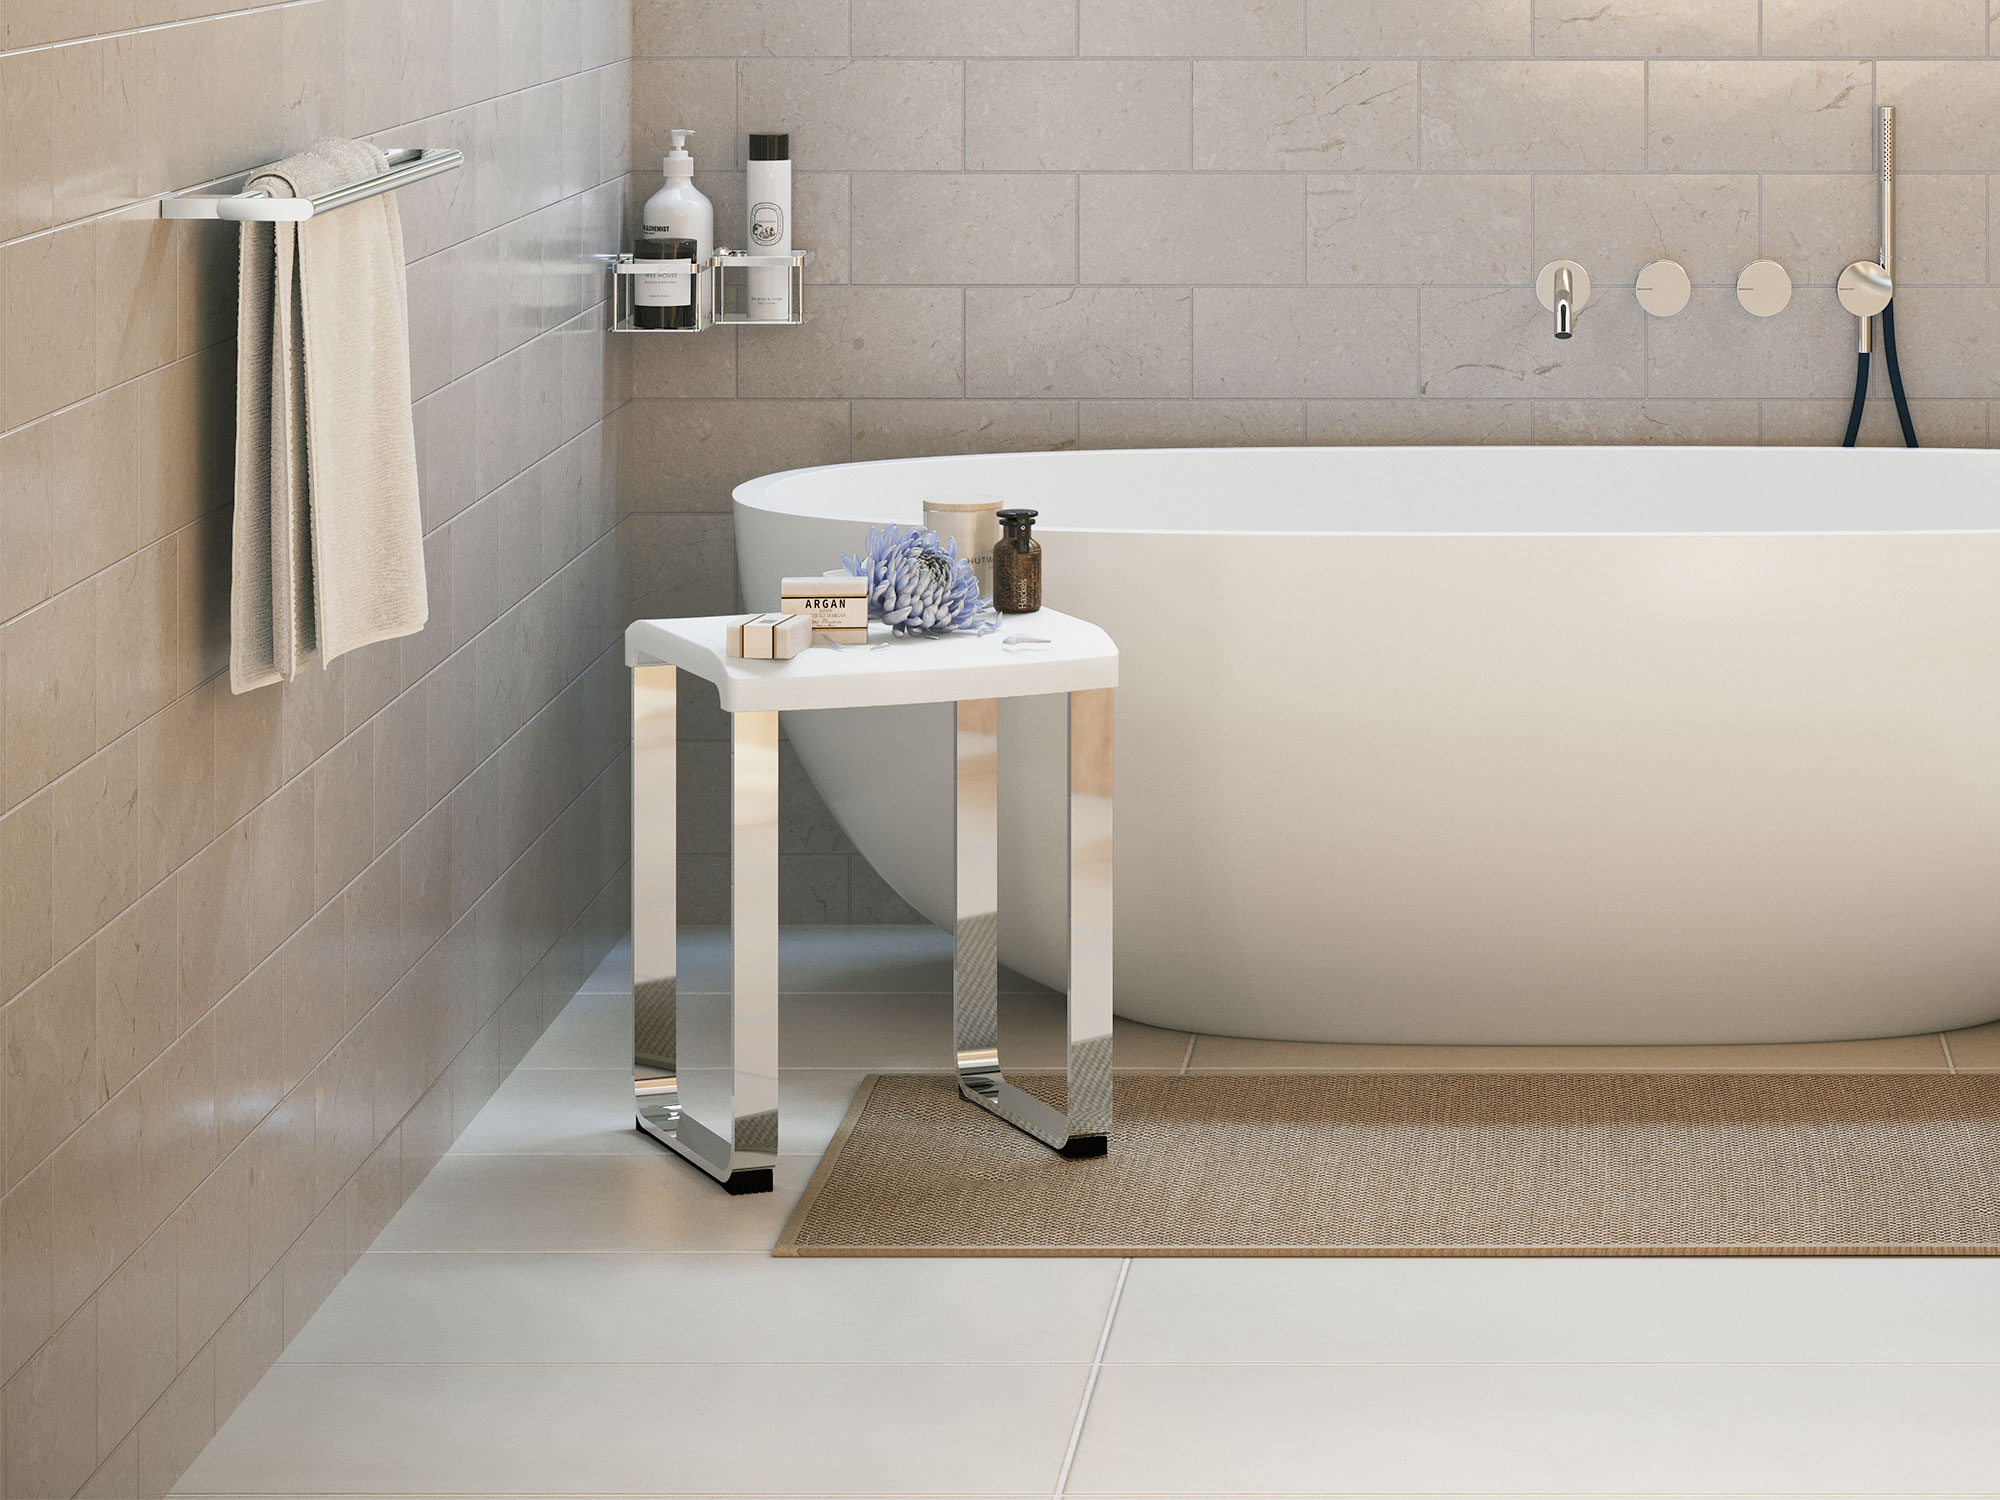 Smedbo badrumspall står i badrum framför badkar i kaklat beige badrum